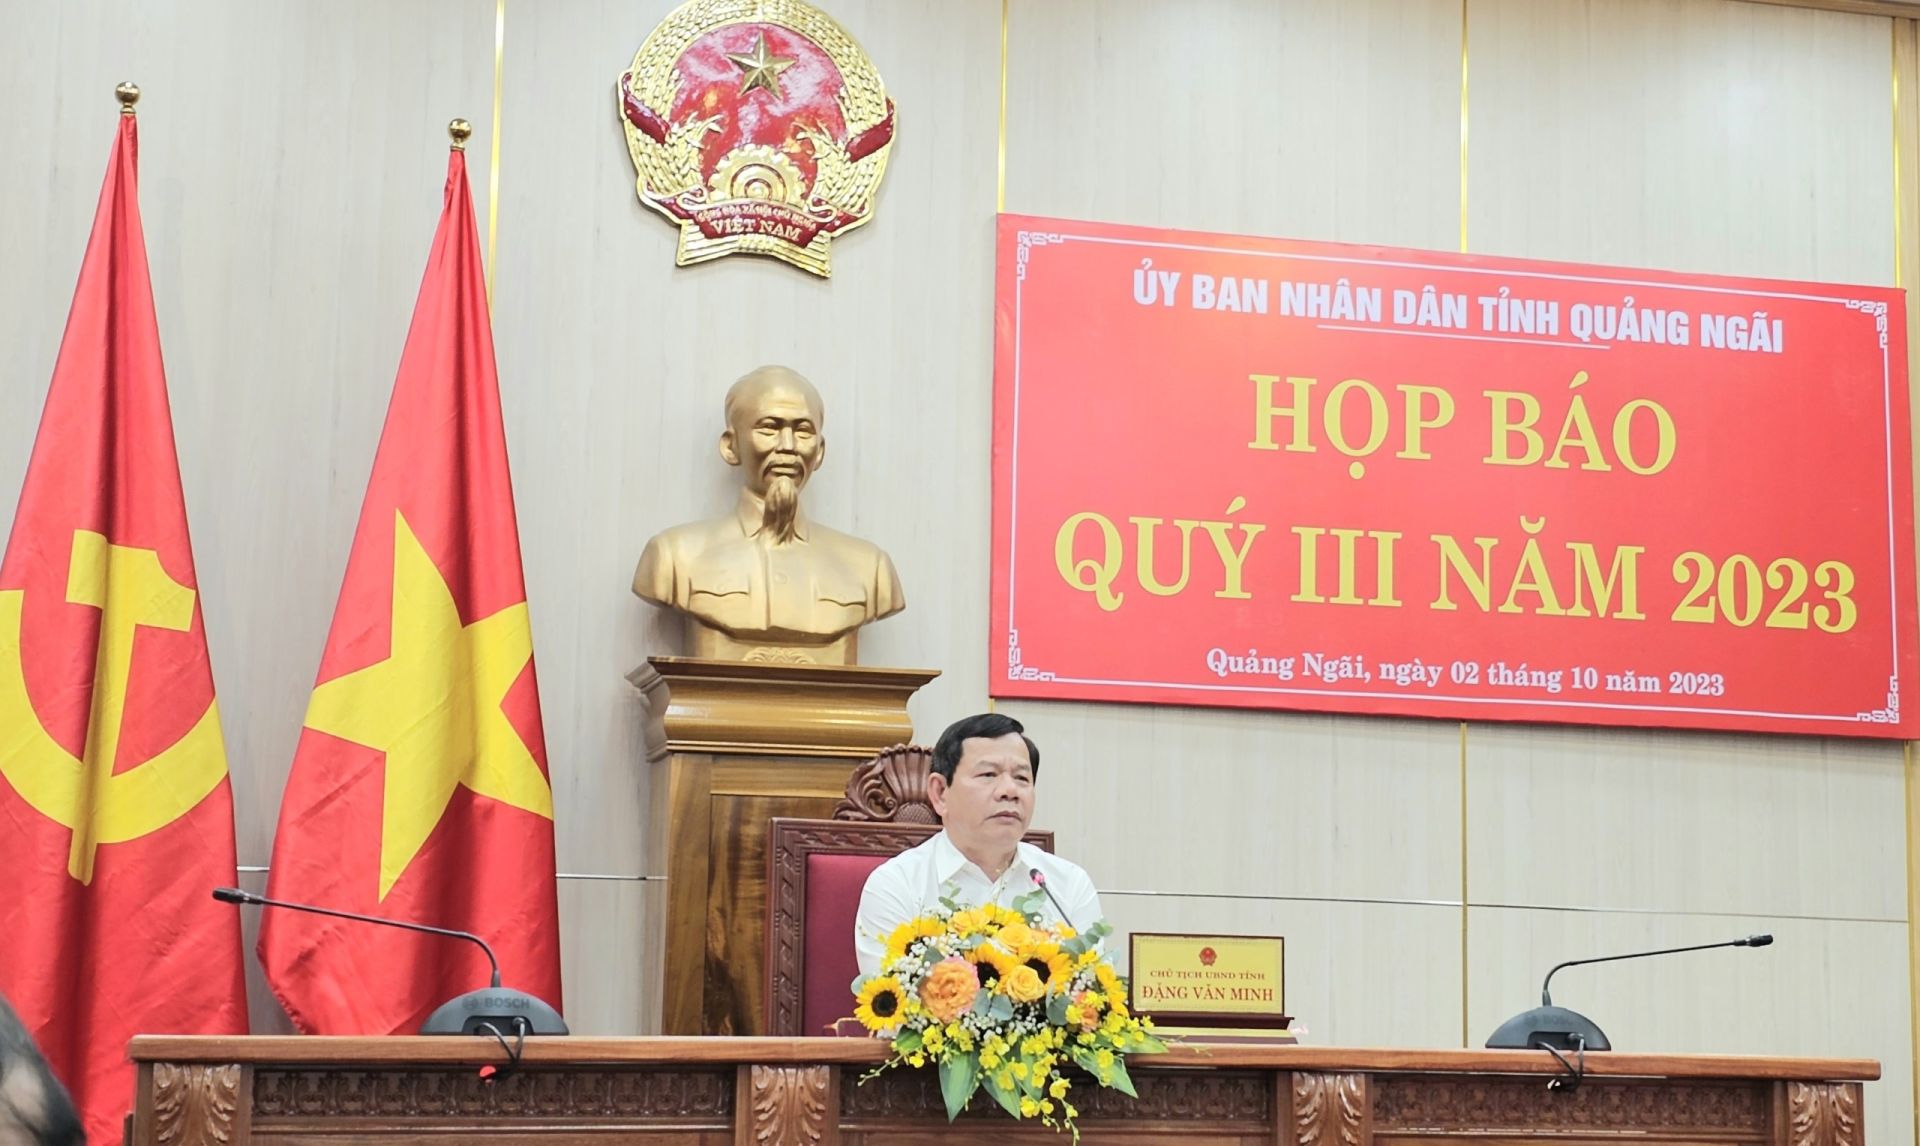 Chủ tịch UBND tỉnh Quảng Ngãi; chủ trì buổi họp báo quý III